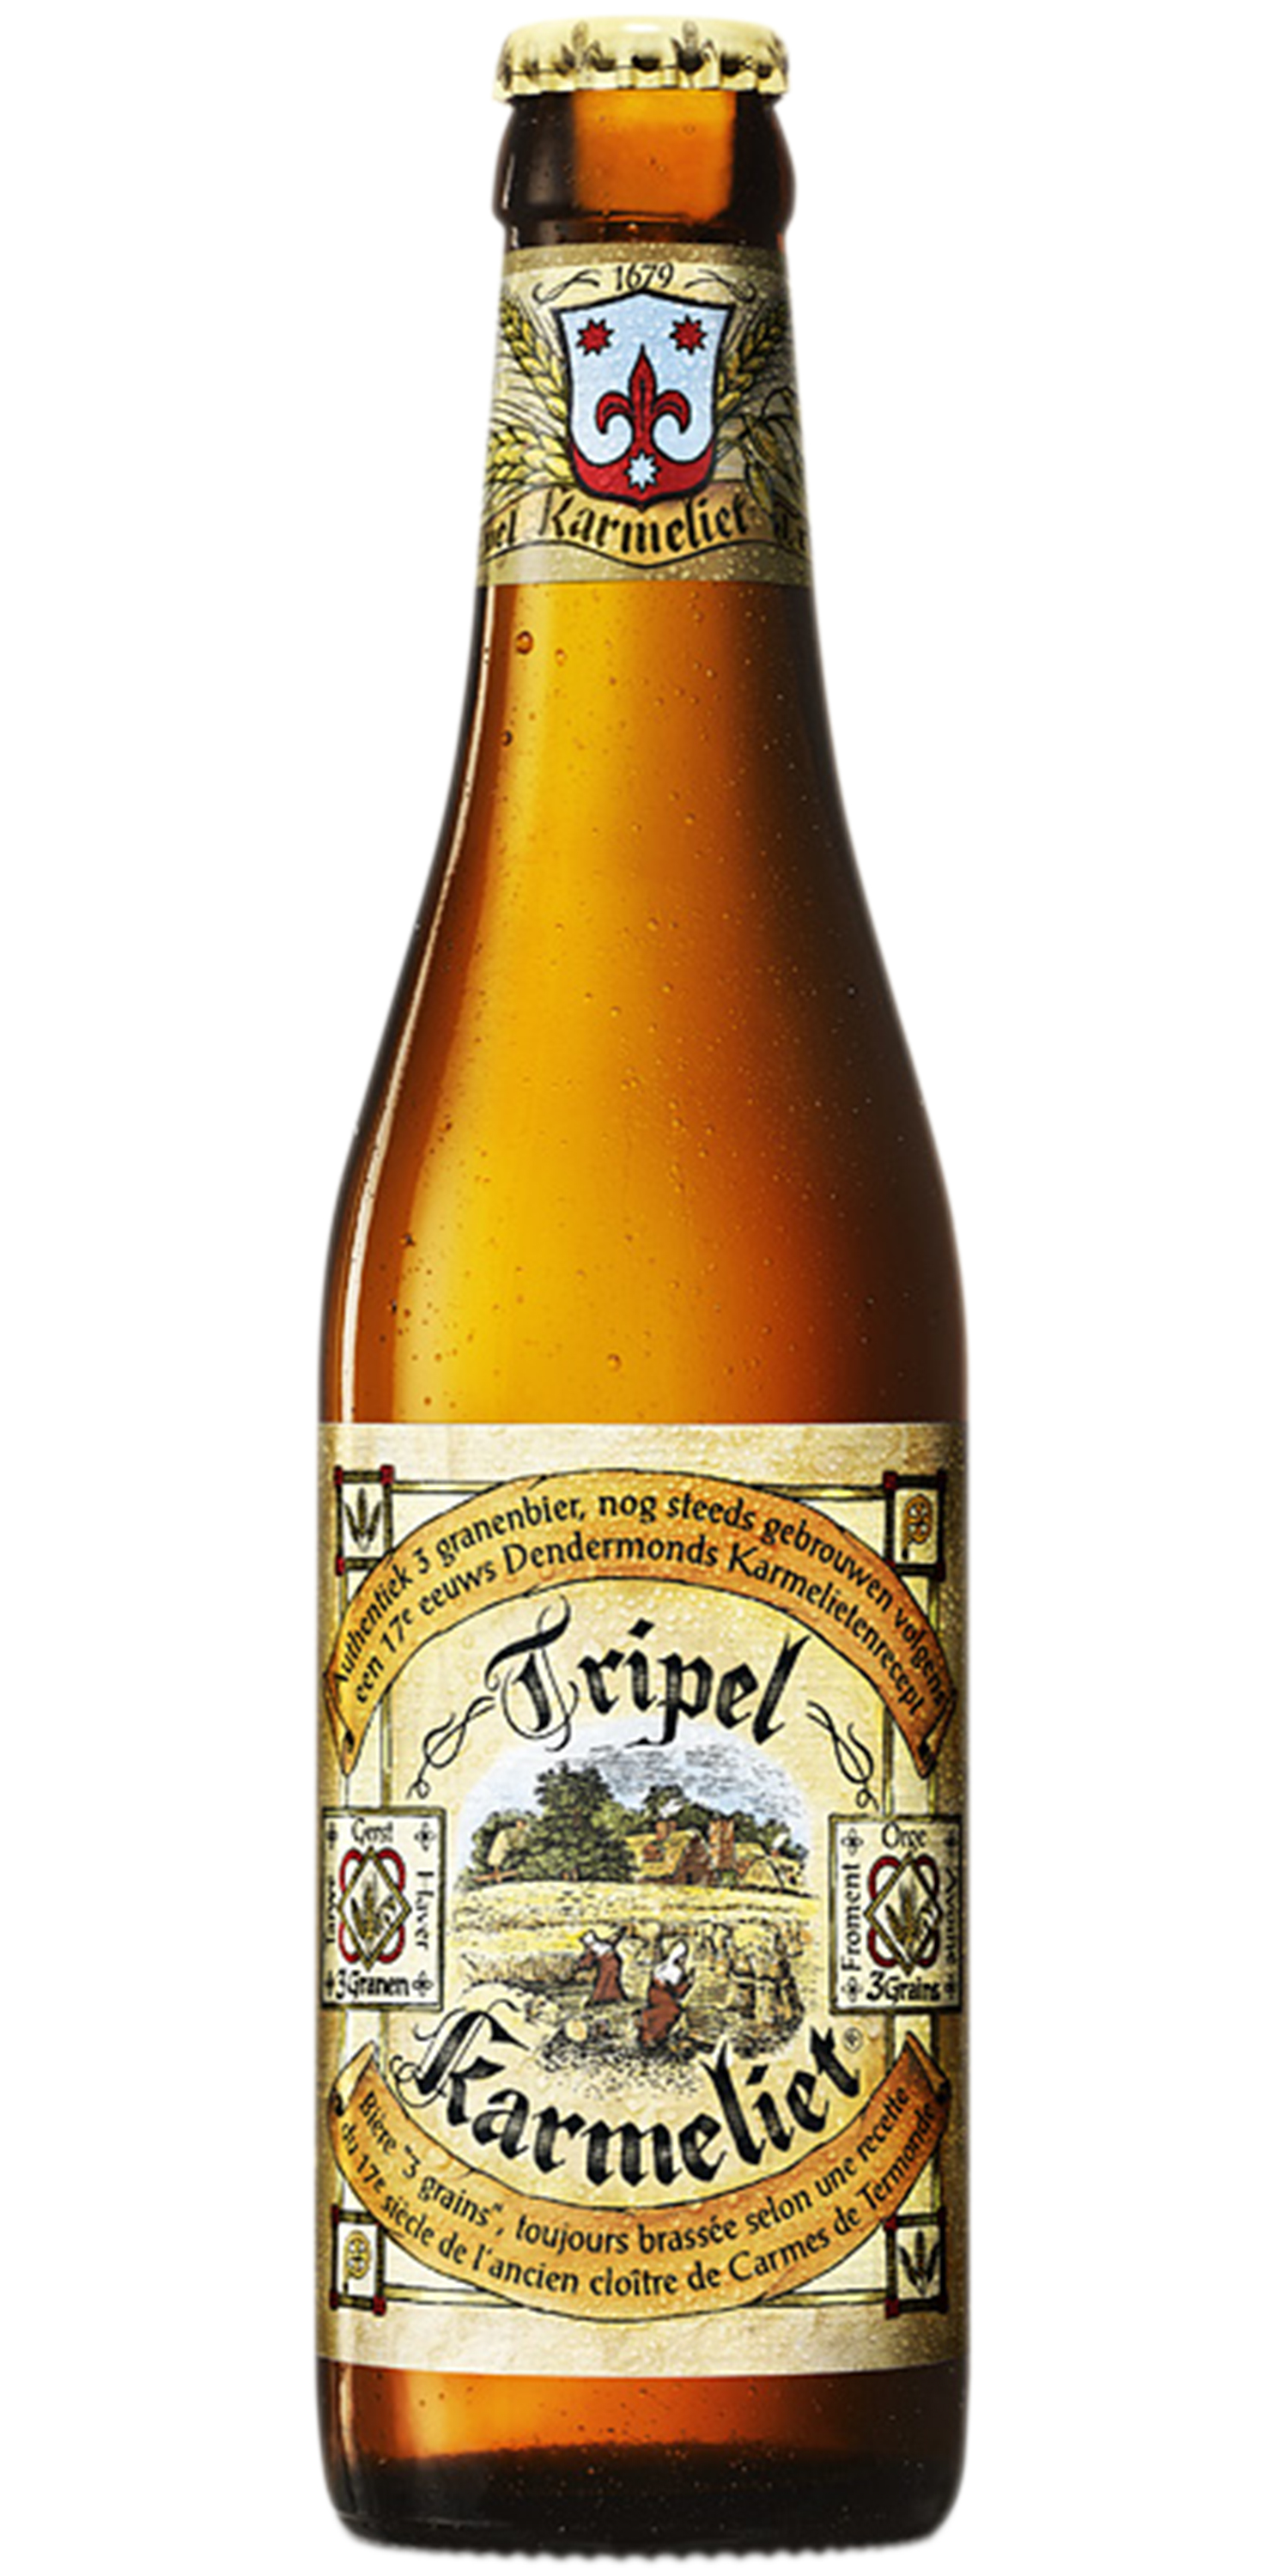 Verre tripel karmeliet - Verre à Biére/Verre à biere du monde - leszitounes